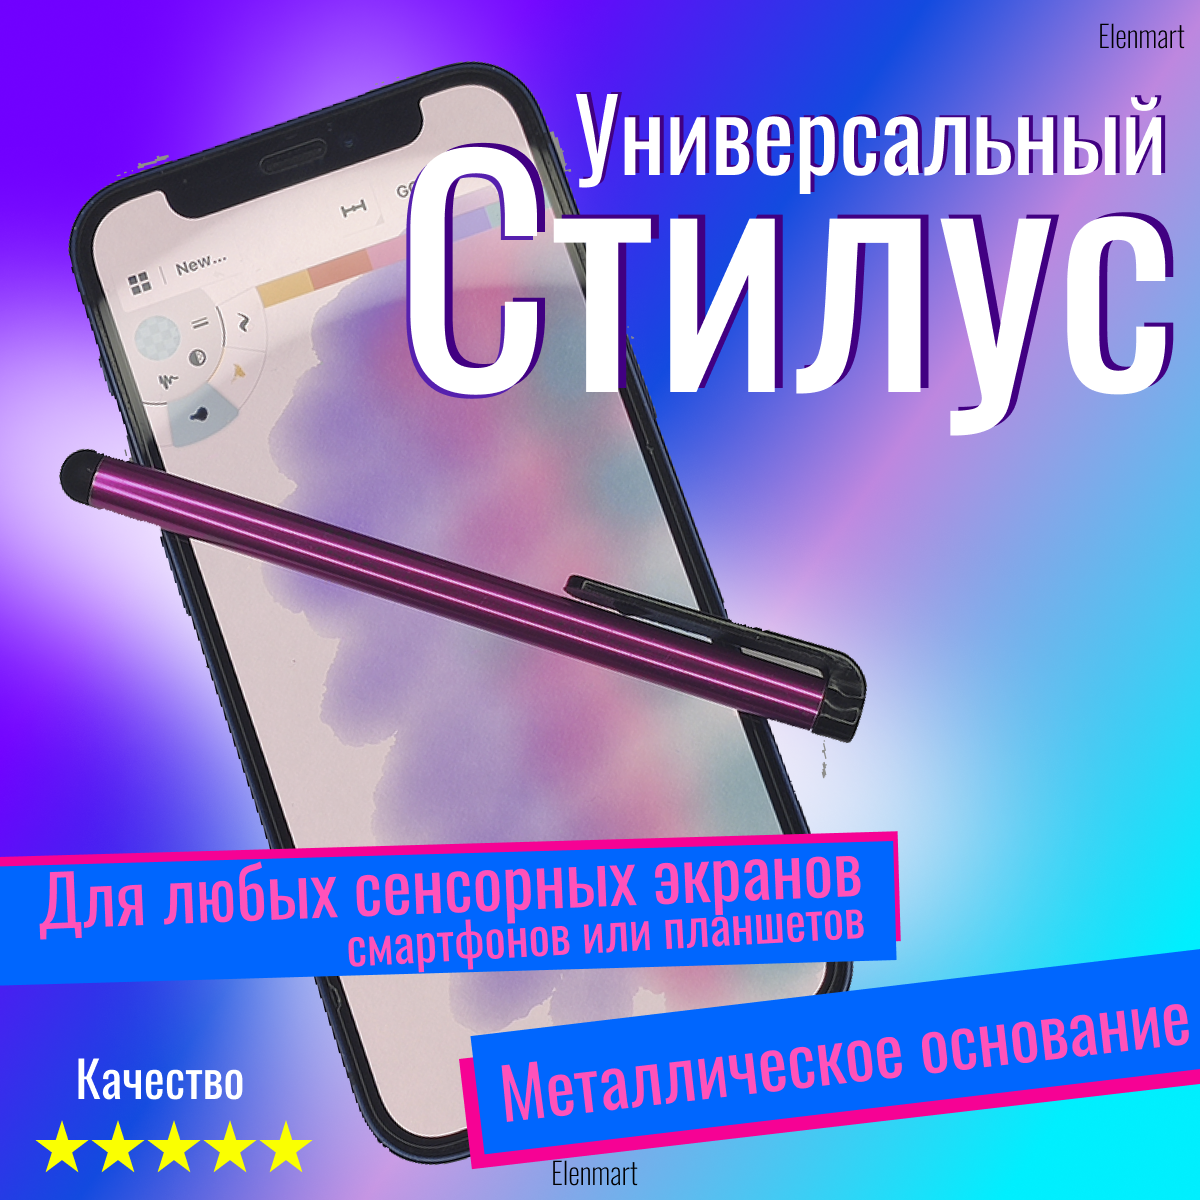 Стилус для телефонаартфона и планшета iphone ipad android windows алюминиевый